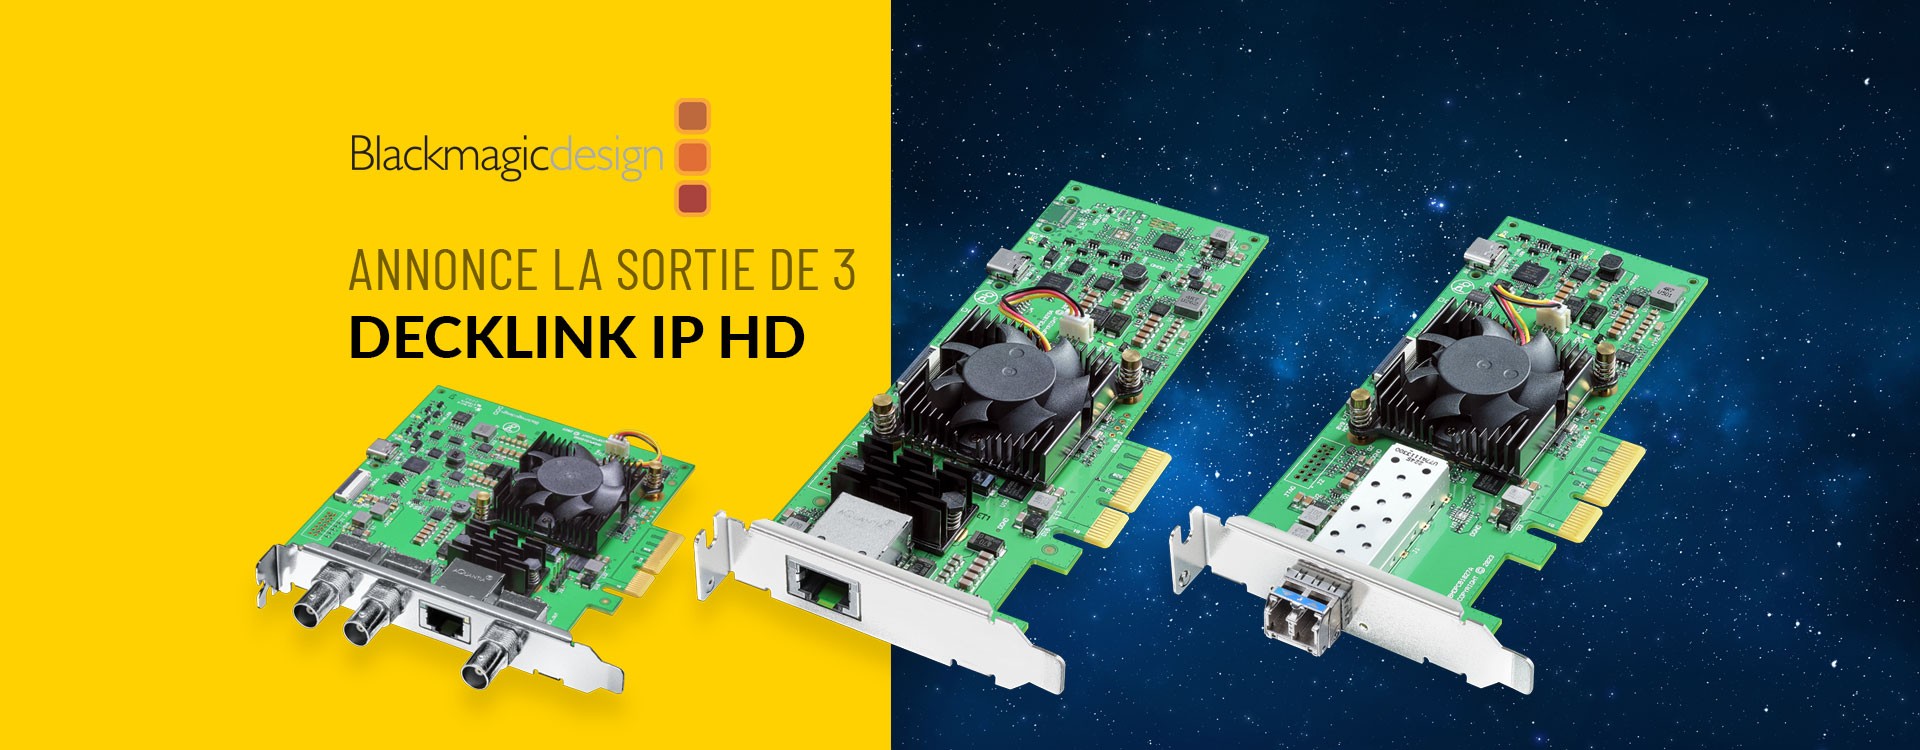 Blackmagic Design annonce la sortie de 3 DeckLink IP HD